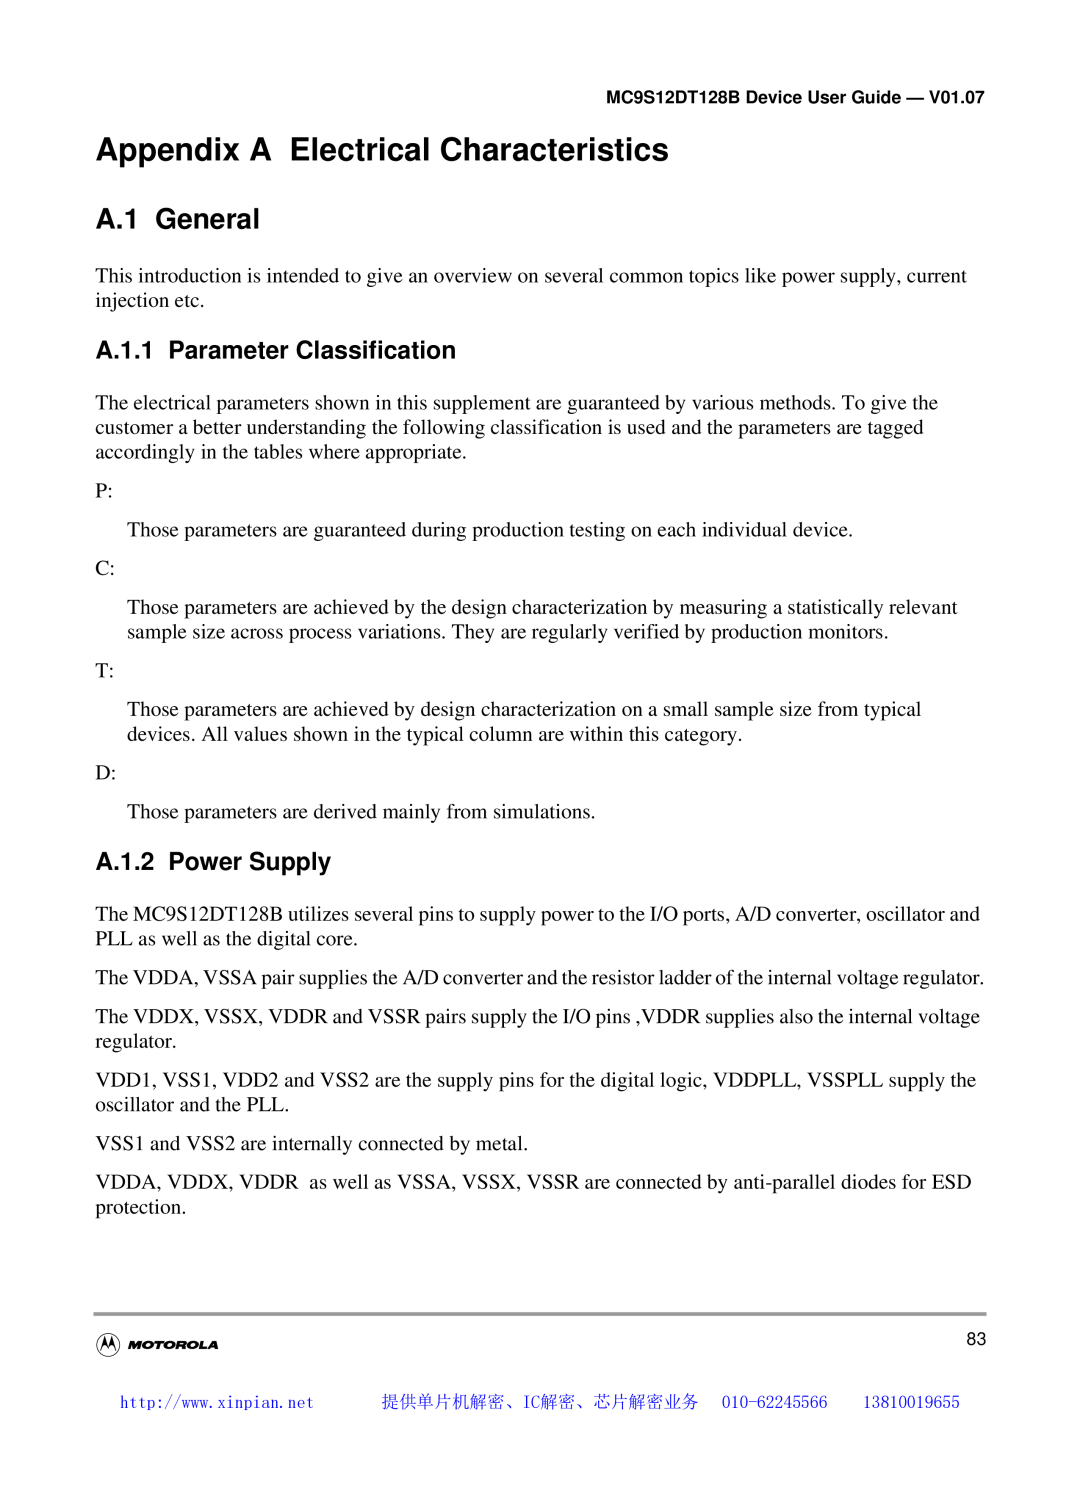 Motorola MC9S12DG128B, MC9S12DT128B Appendix A Electrical Characteristics, A.1 General, A.1.1 Parameter Classification 